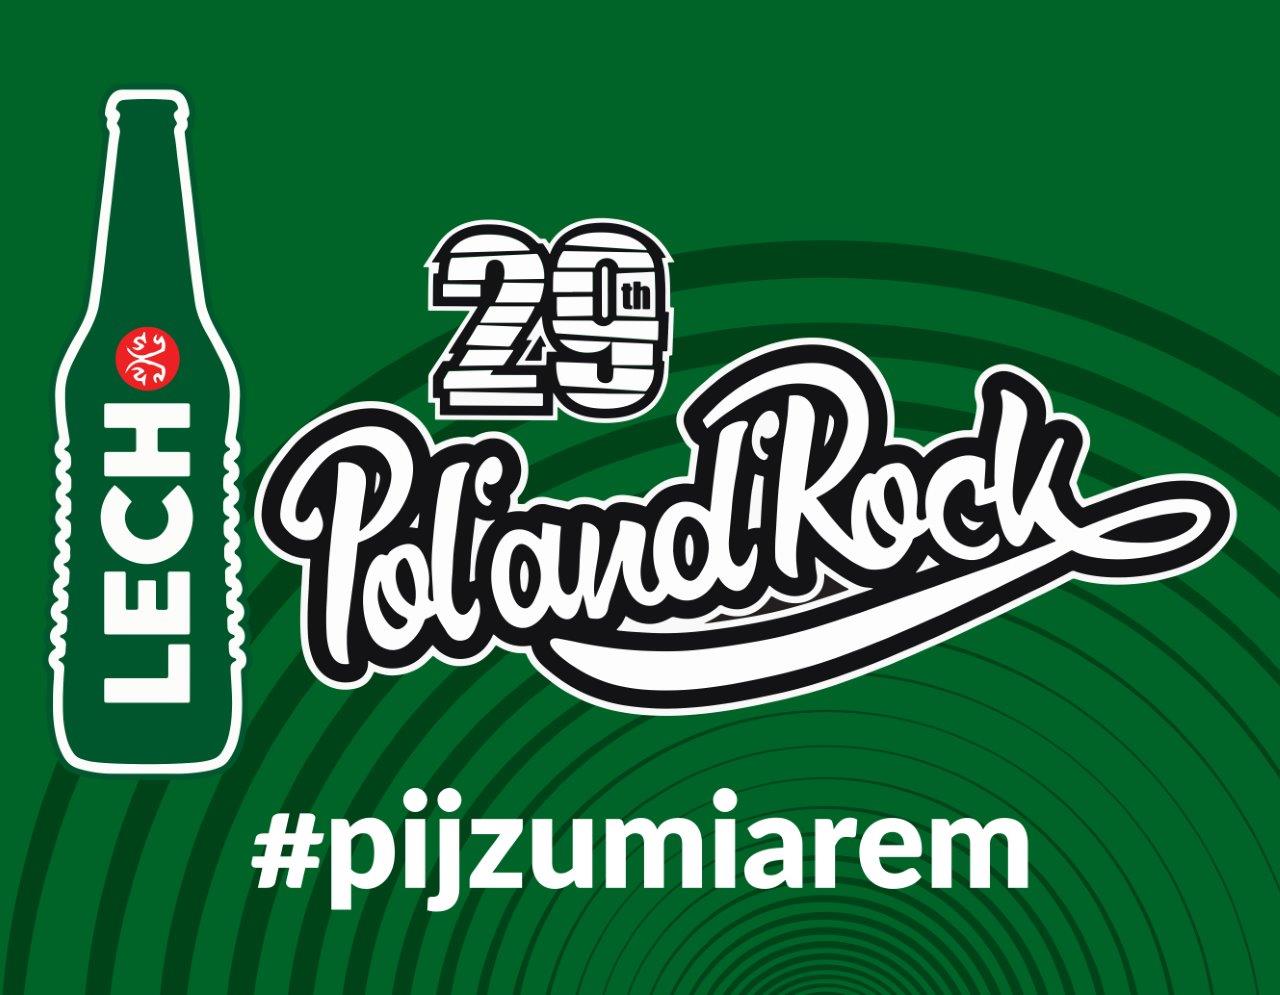 KP Wachlarz PolandRock